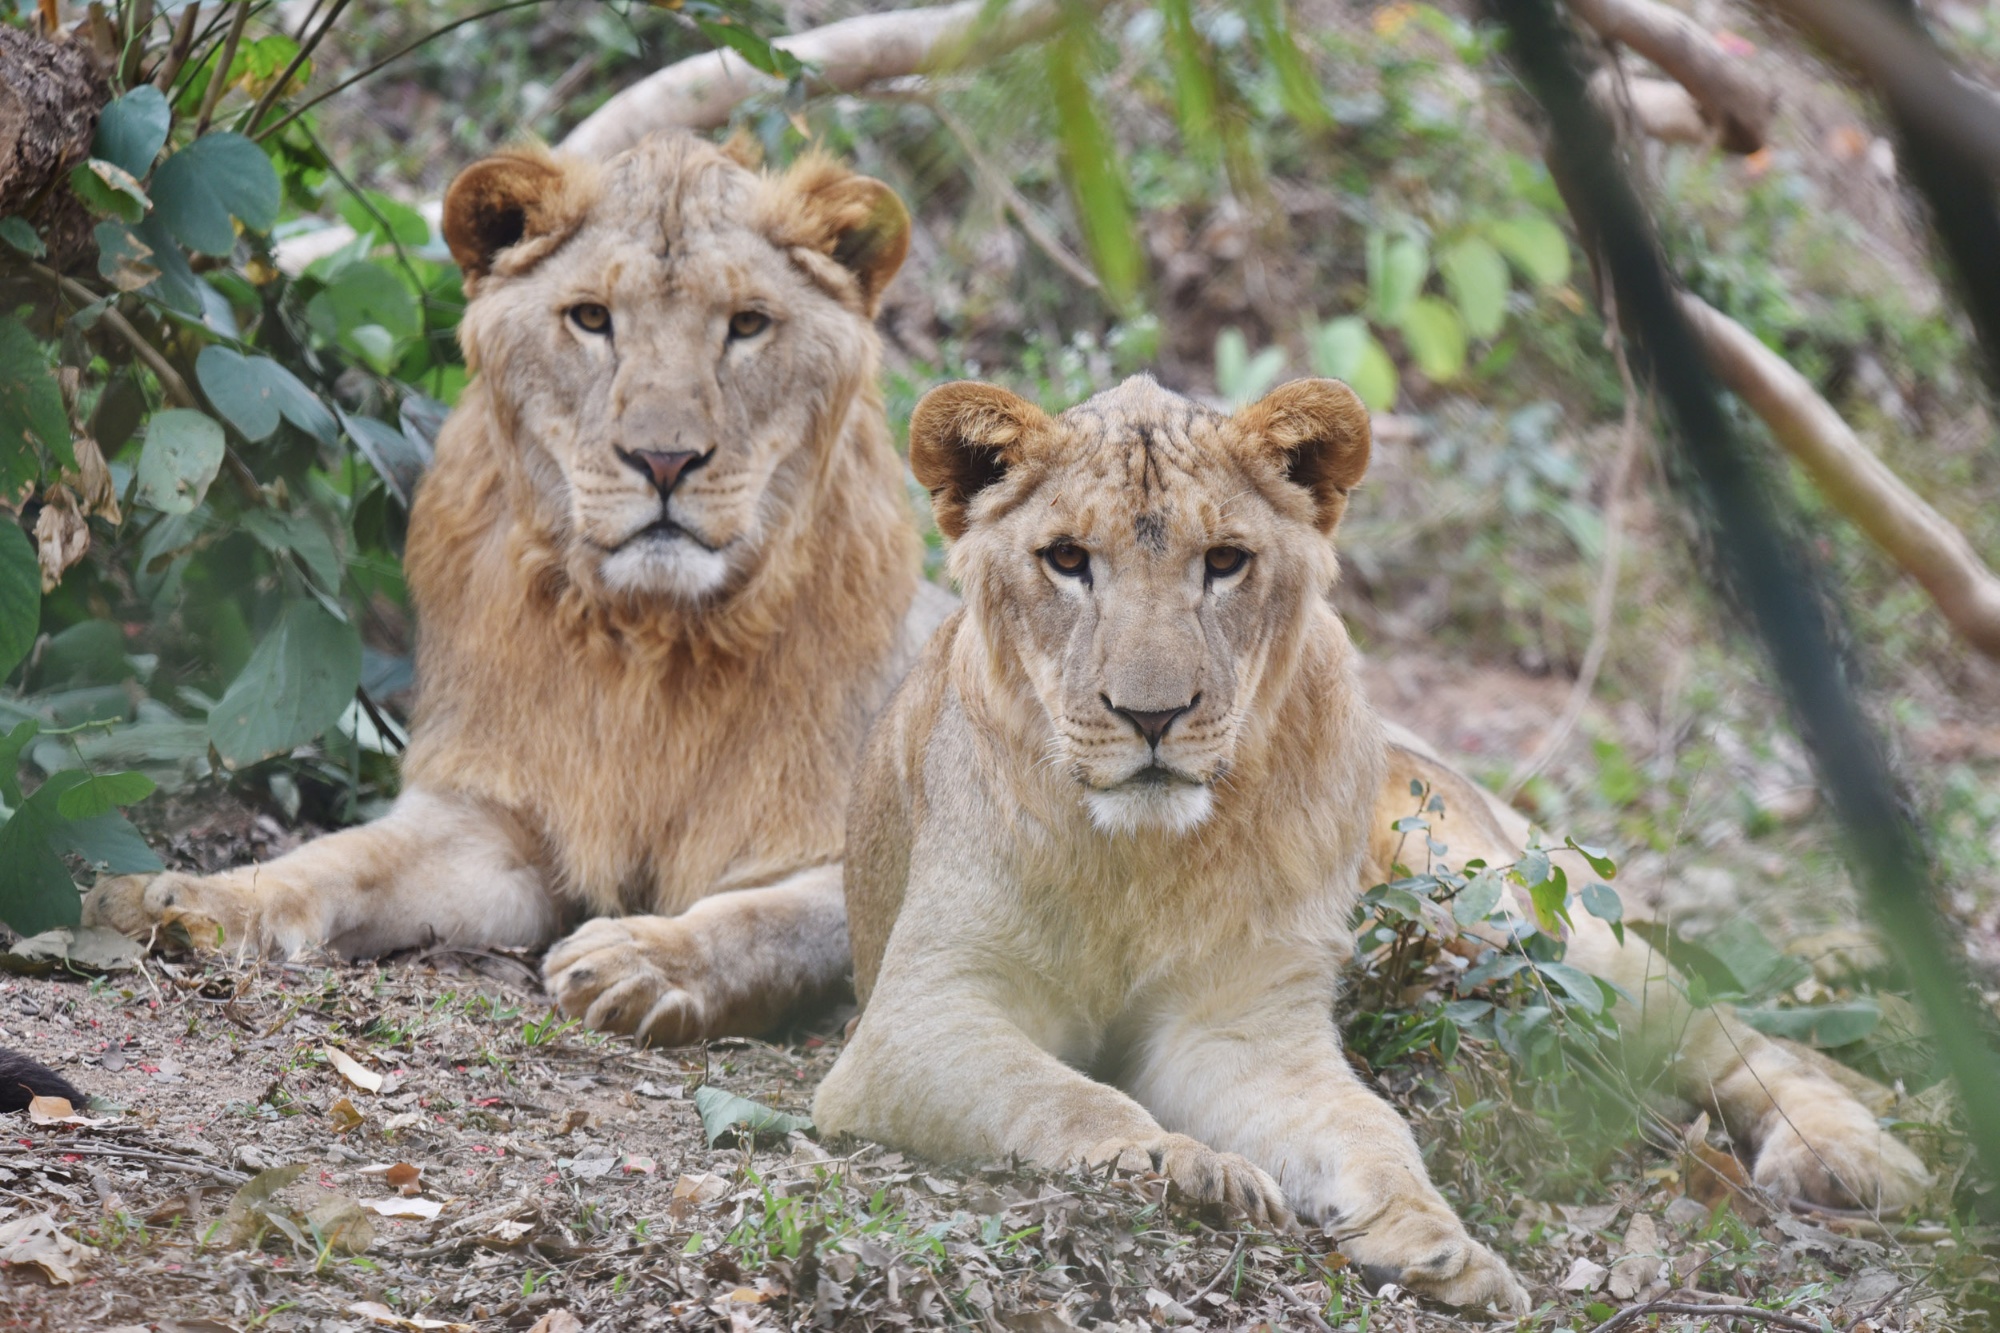 雄獅(左)的體型比雌獅大A雄獅已長生淡棕色的鬃毛